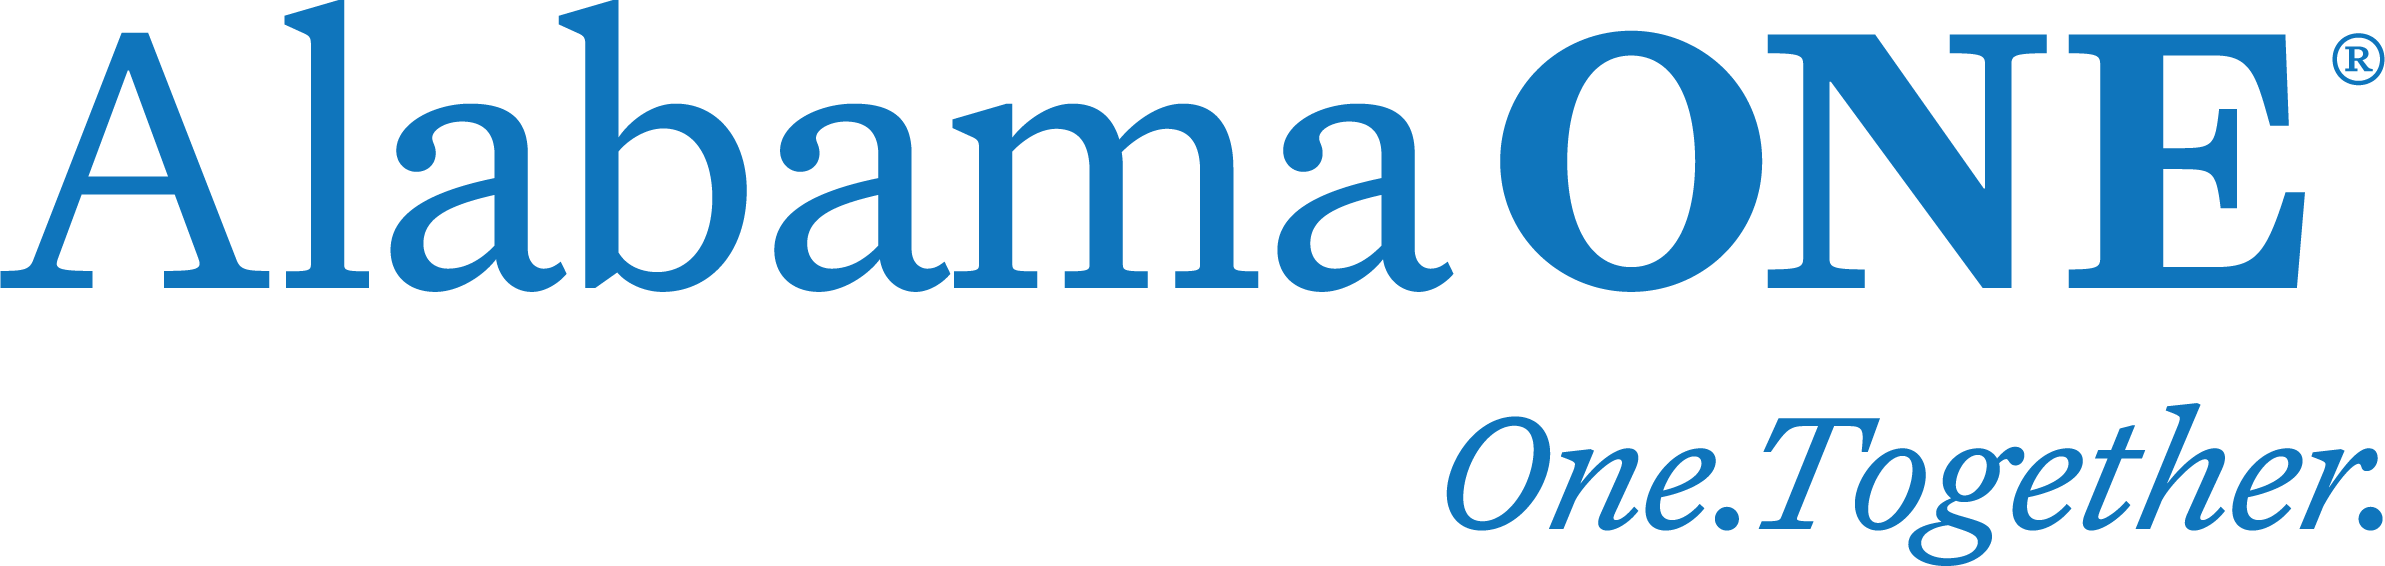 Alabama ONE Logo R - Blue with Tagline